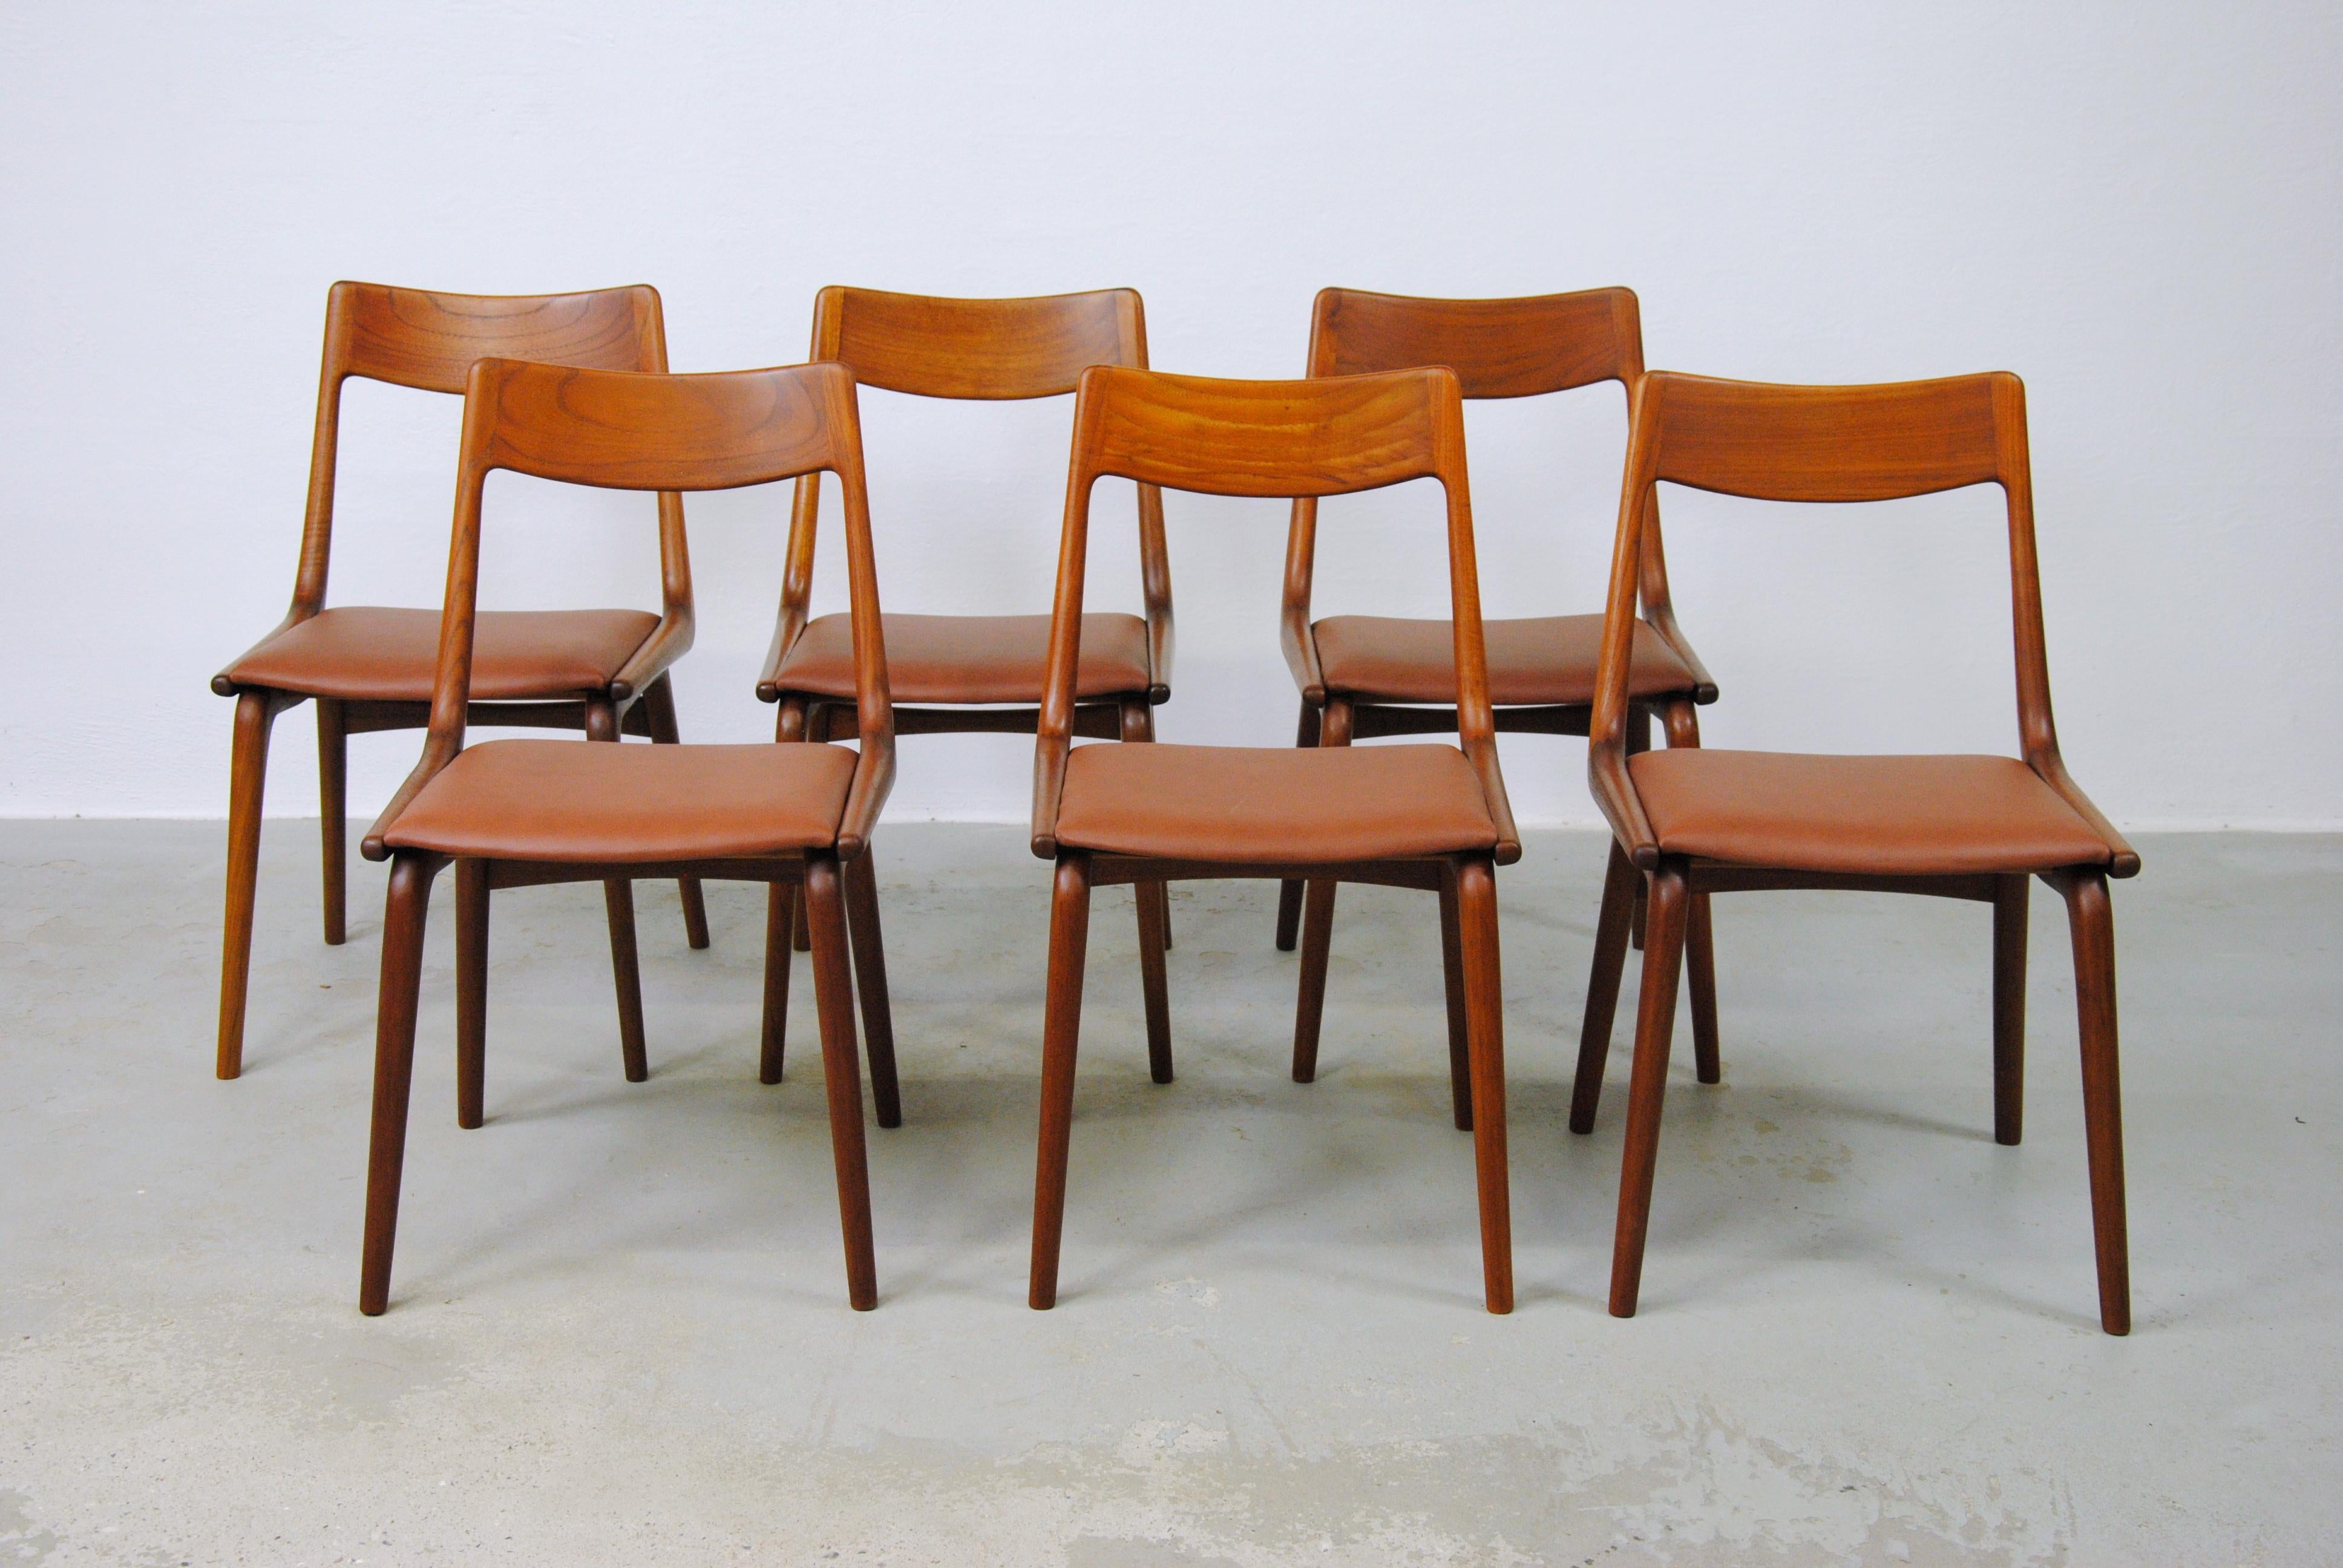 Satz von sechs dänischen Bumerang-Esszimmerstühlen aus Teakholz aus den 1950er Jahren von Alfred Christensen für die Slagelse Møbelfabrik.

Die bequemen Stühle haben ein einfaches, aber elegantes, bumerangförmiges Gestell aus massivem, gebogenem